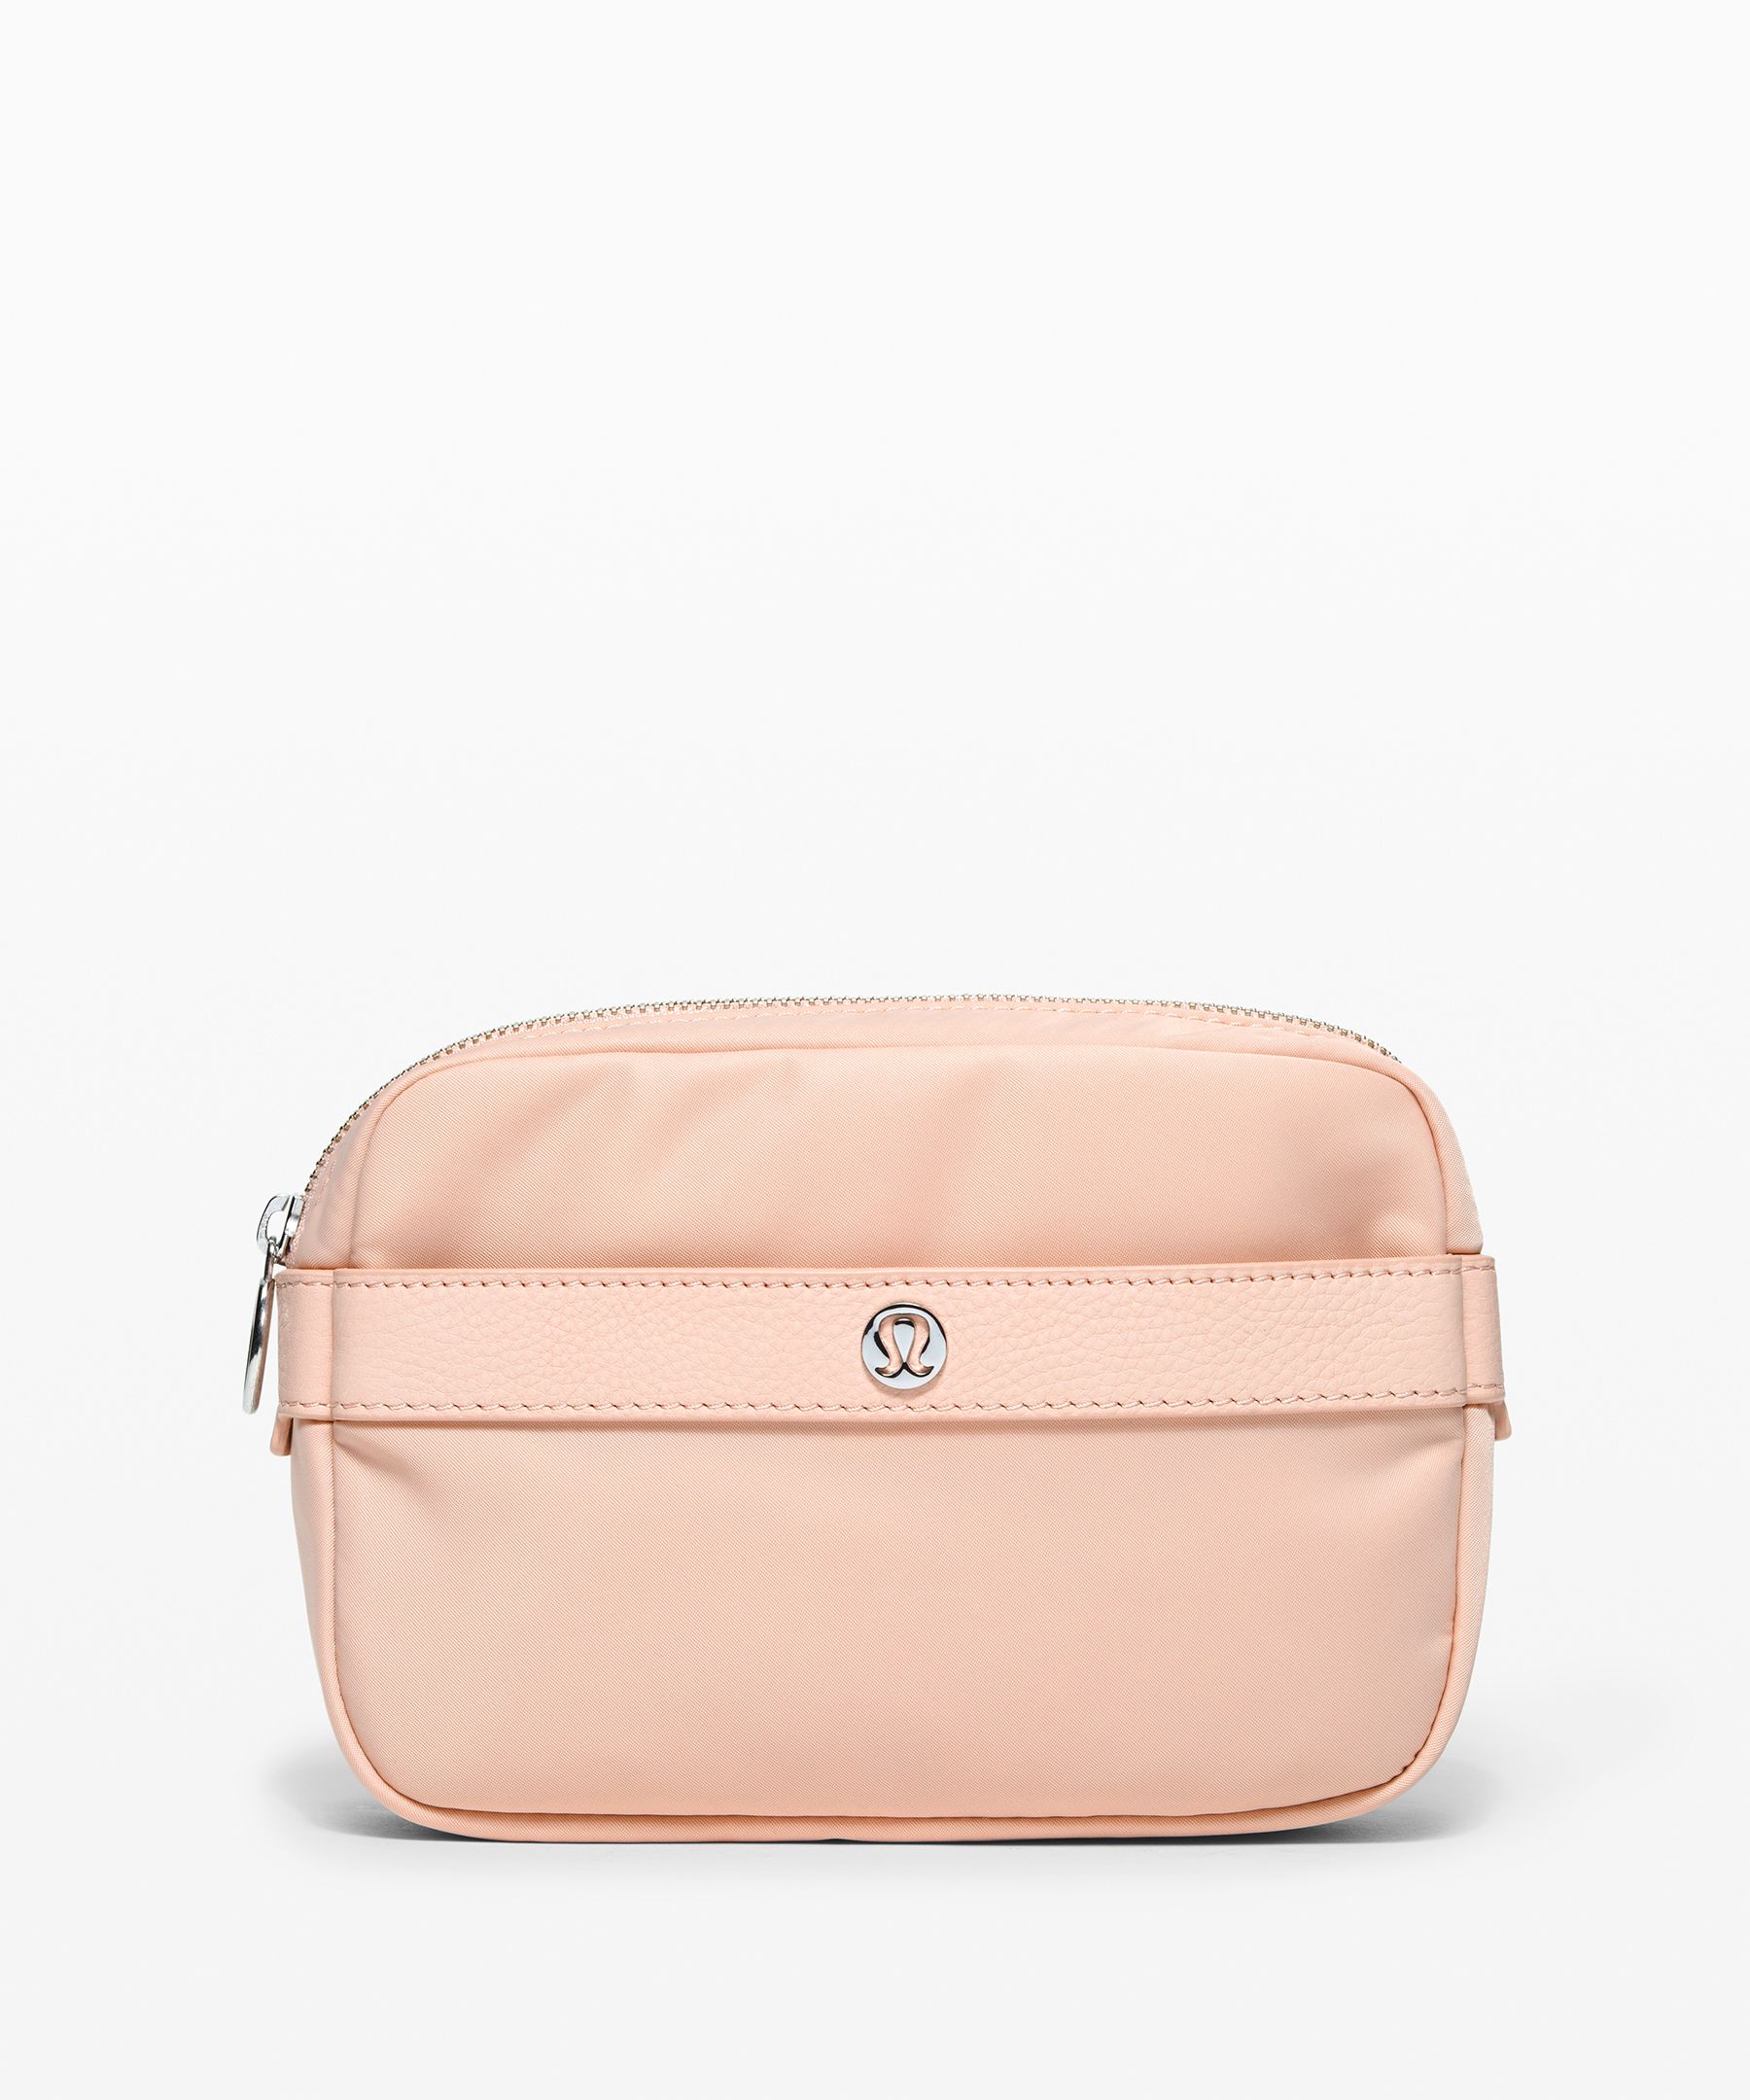 lululemon belt bag pink